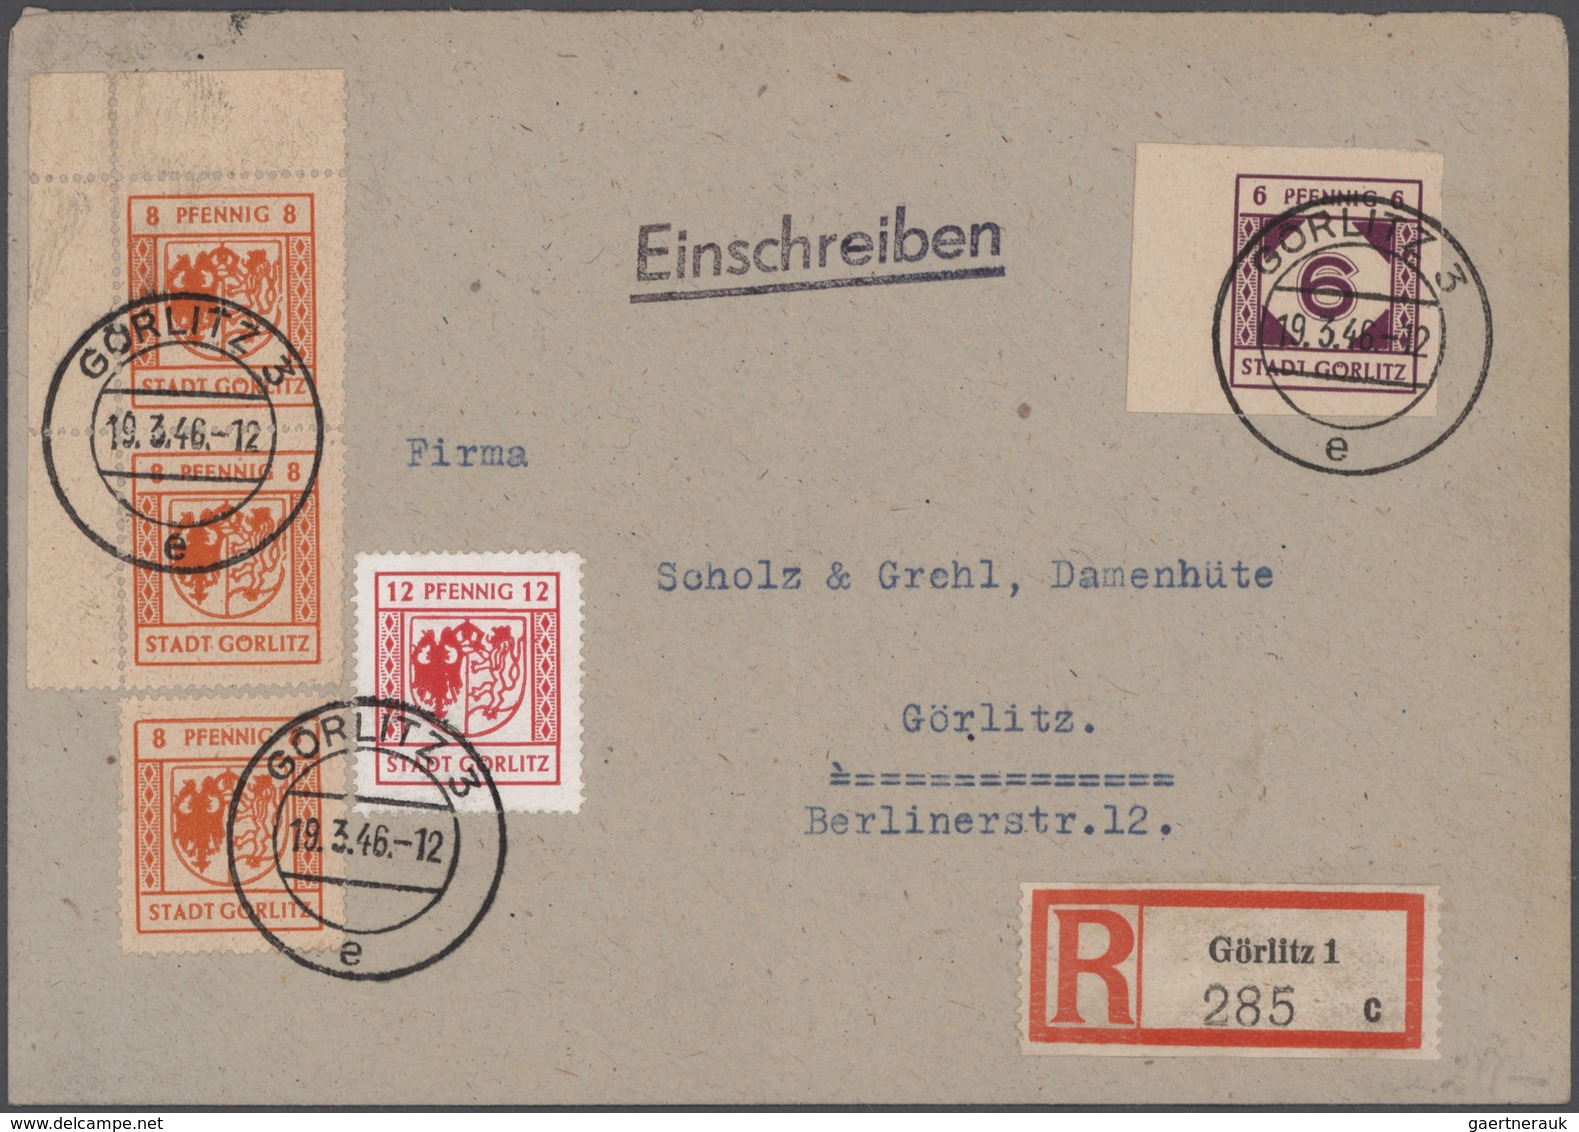 Deutsche Lokalausgaben ab 1945: 1945, dreibändige Spezialsammlung mit Marken Briefstücken und etlich